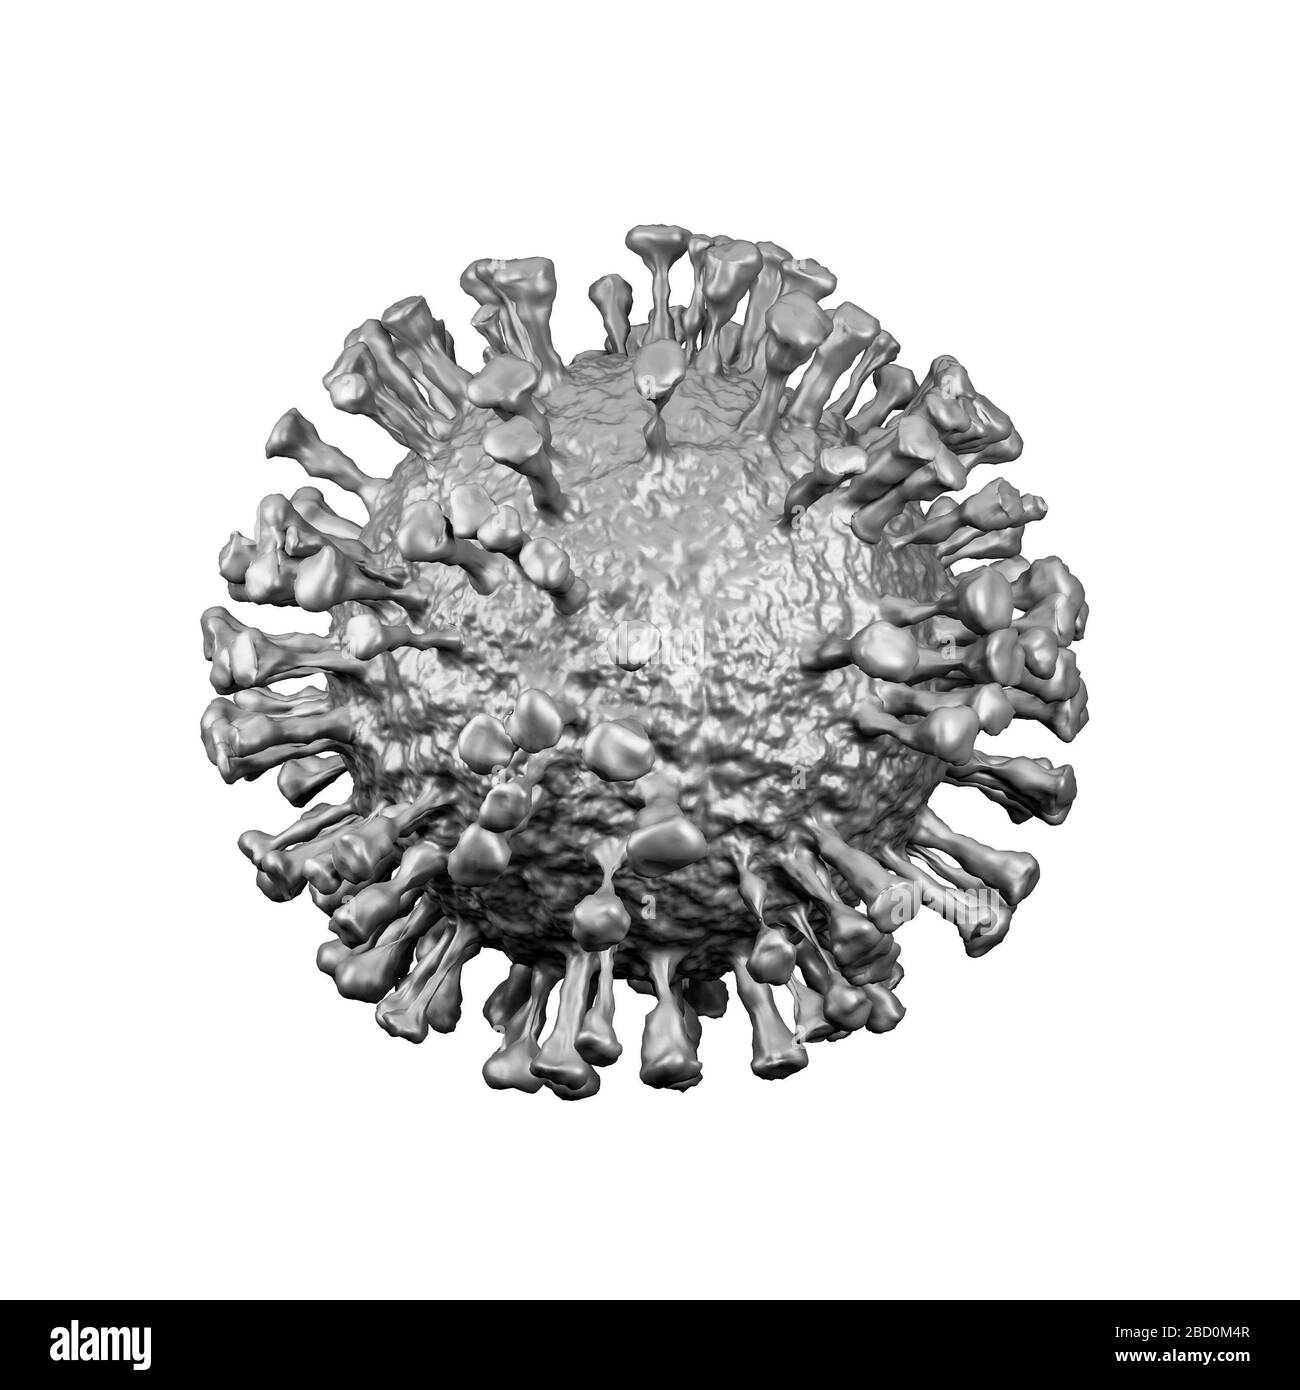 Illustrazione del modello cellulare di coronavirus, pandemia di coronavirus Covid-19, rappresentazione 3D, concettuale, primo piano, sfondo bianco Foto Stock